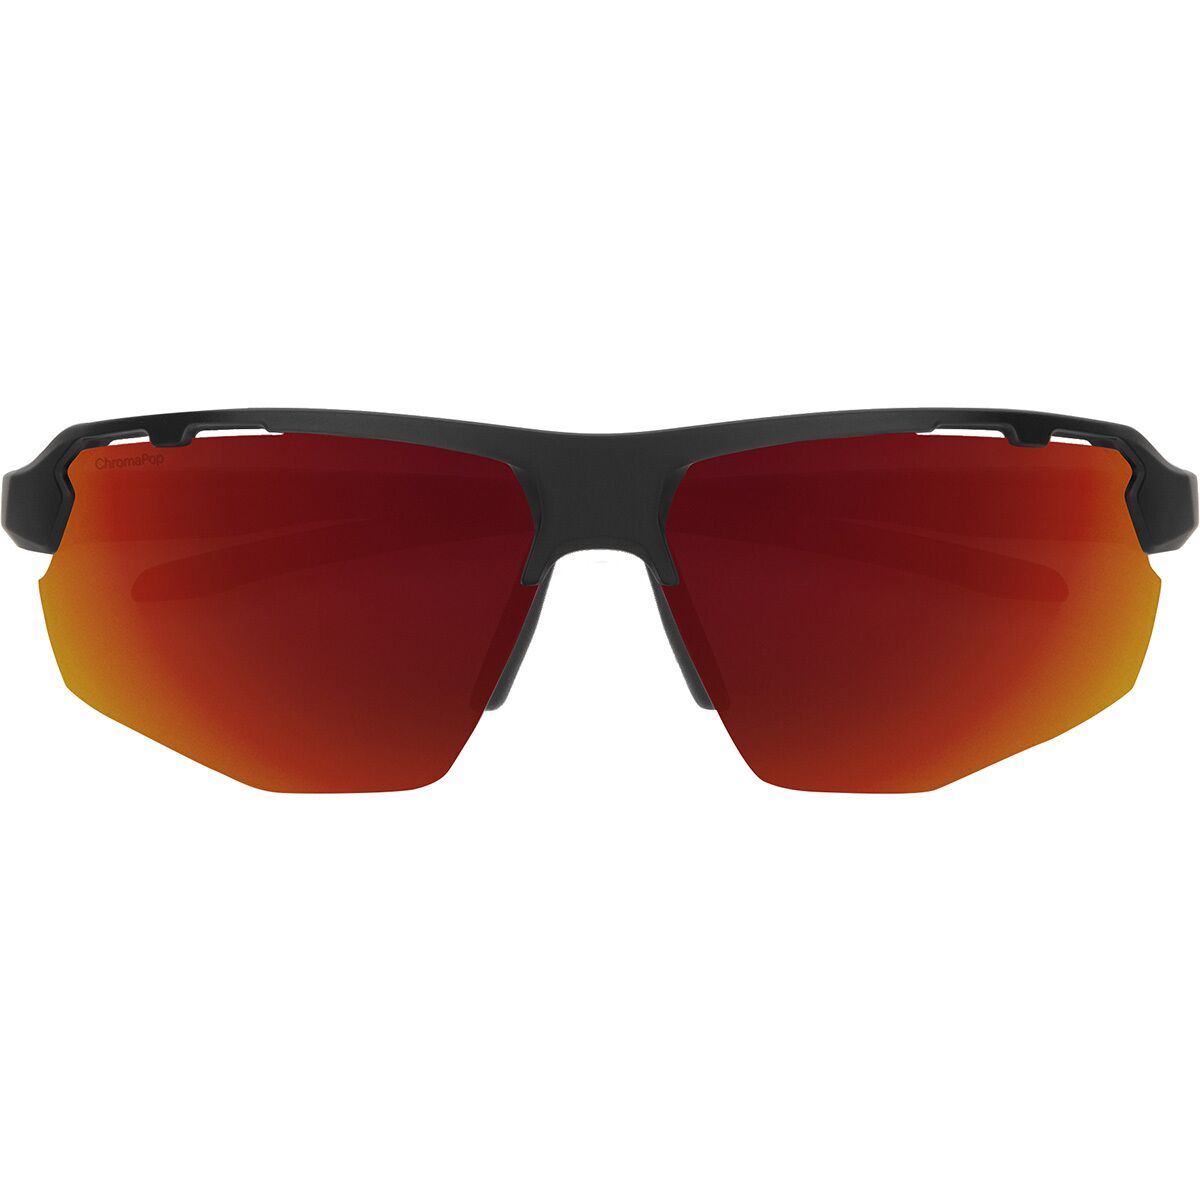  Smith Resolve Polarized Sunglasses - Accessories